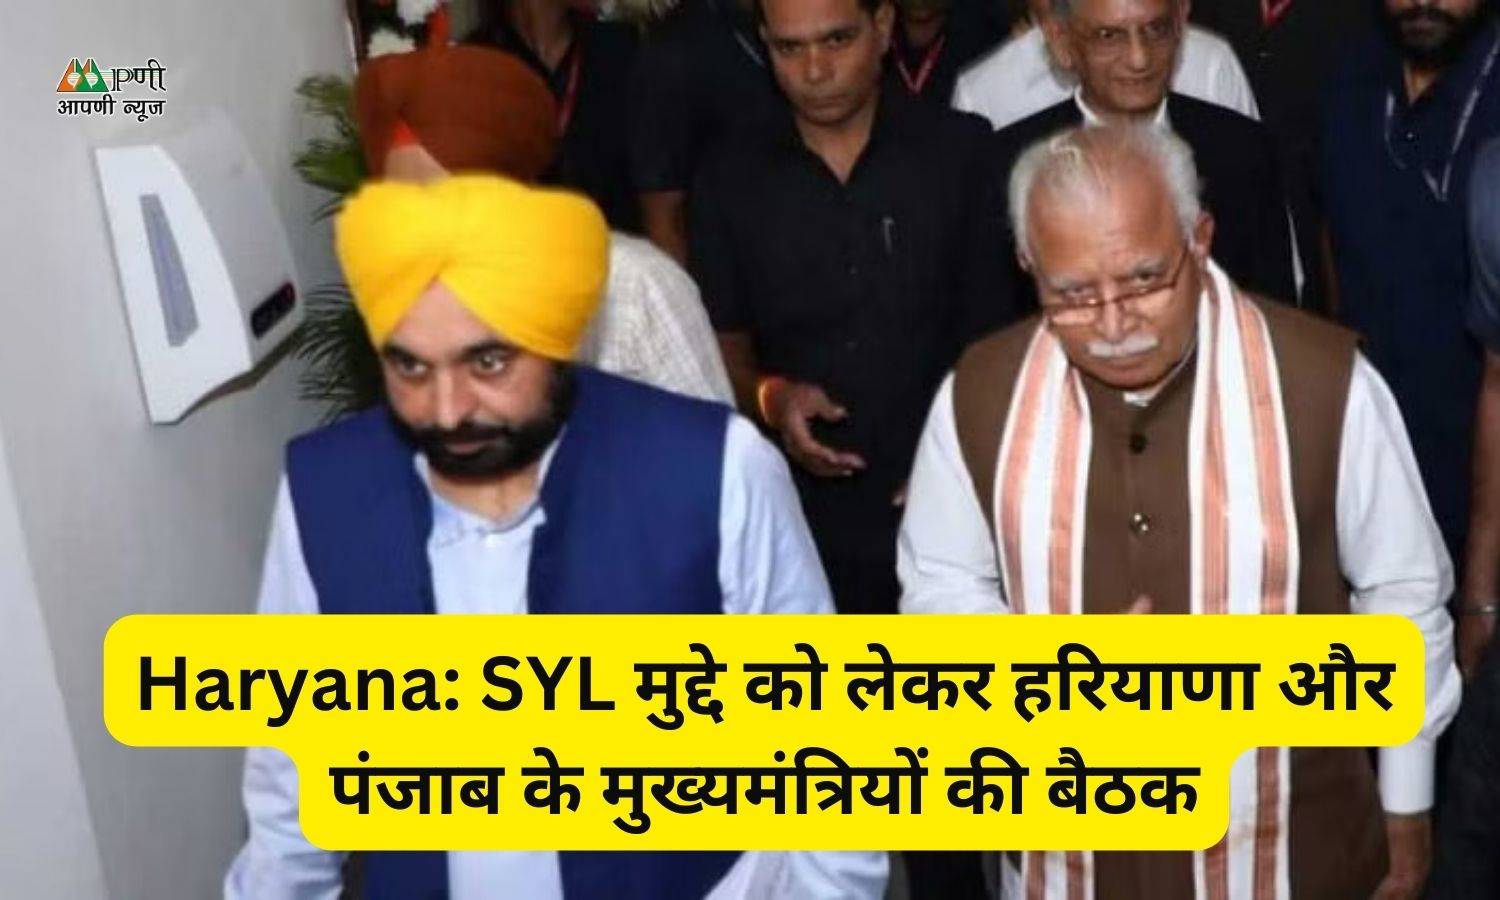 Haryana: SYL मुद्दे को लेकर हरियाणा और पंजाब के मुख्यमंत्रियों की बैठक